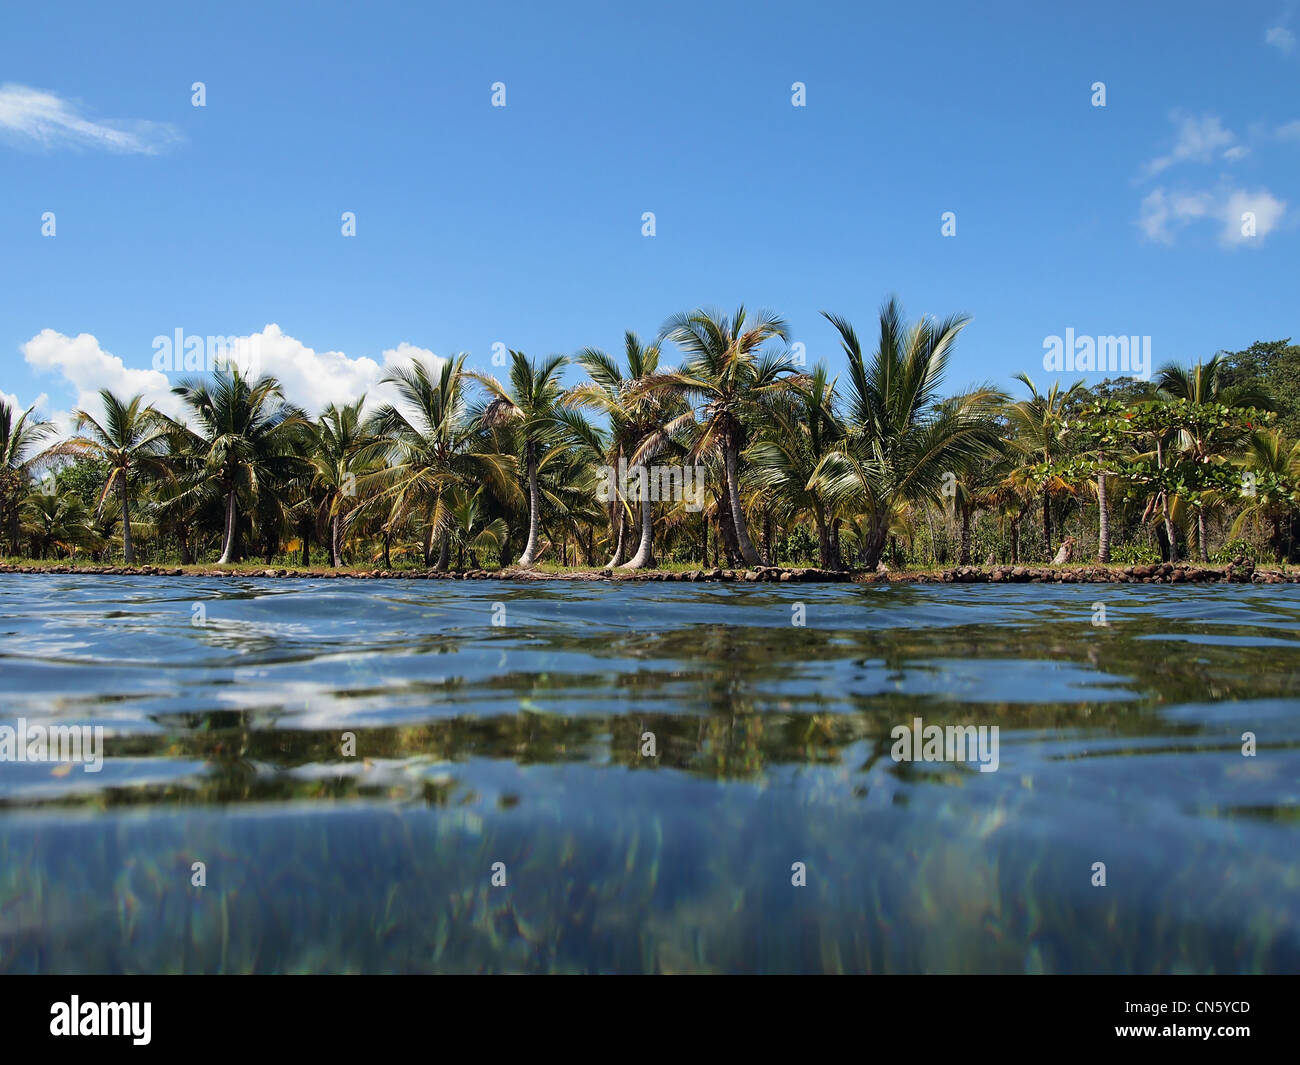 La Côte Tropical avec des cocotiers vu à partir de la surface de l'eau, la mer des Caraïbes, Panama, Amérique Centrale Banque D'Images